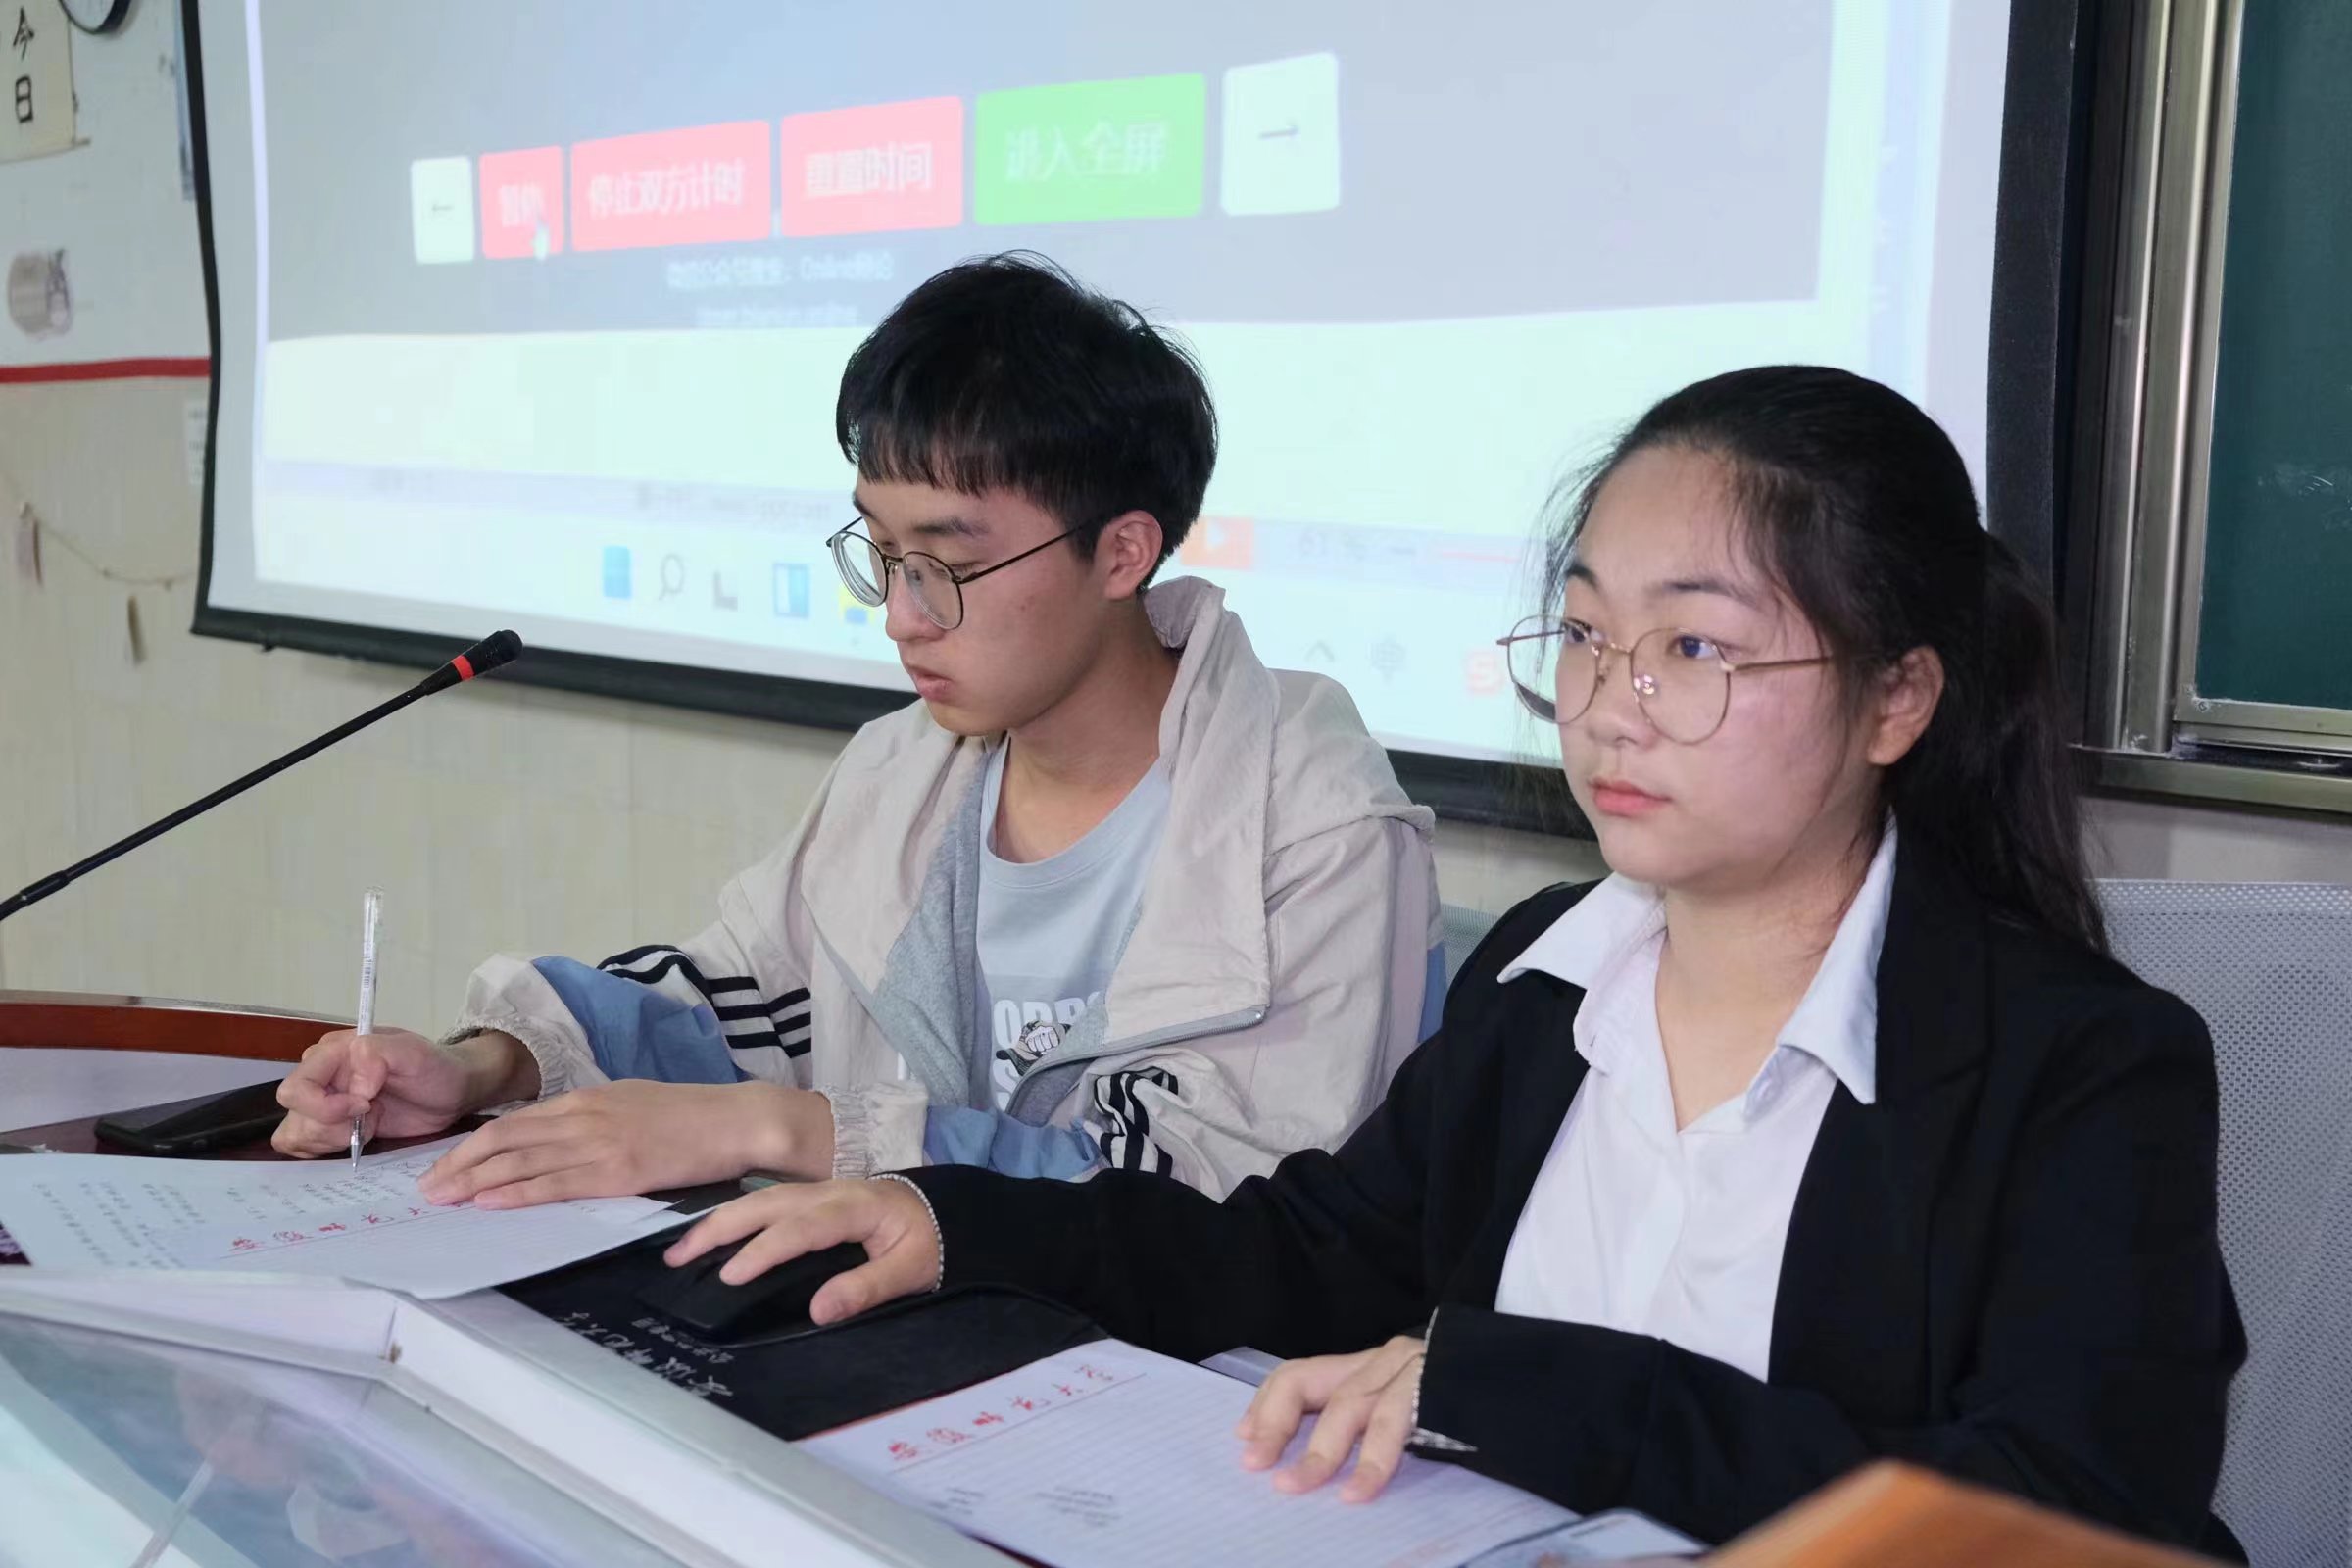 21级中国语言文学类3班成功开展辩论赛